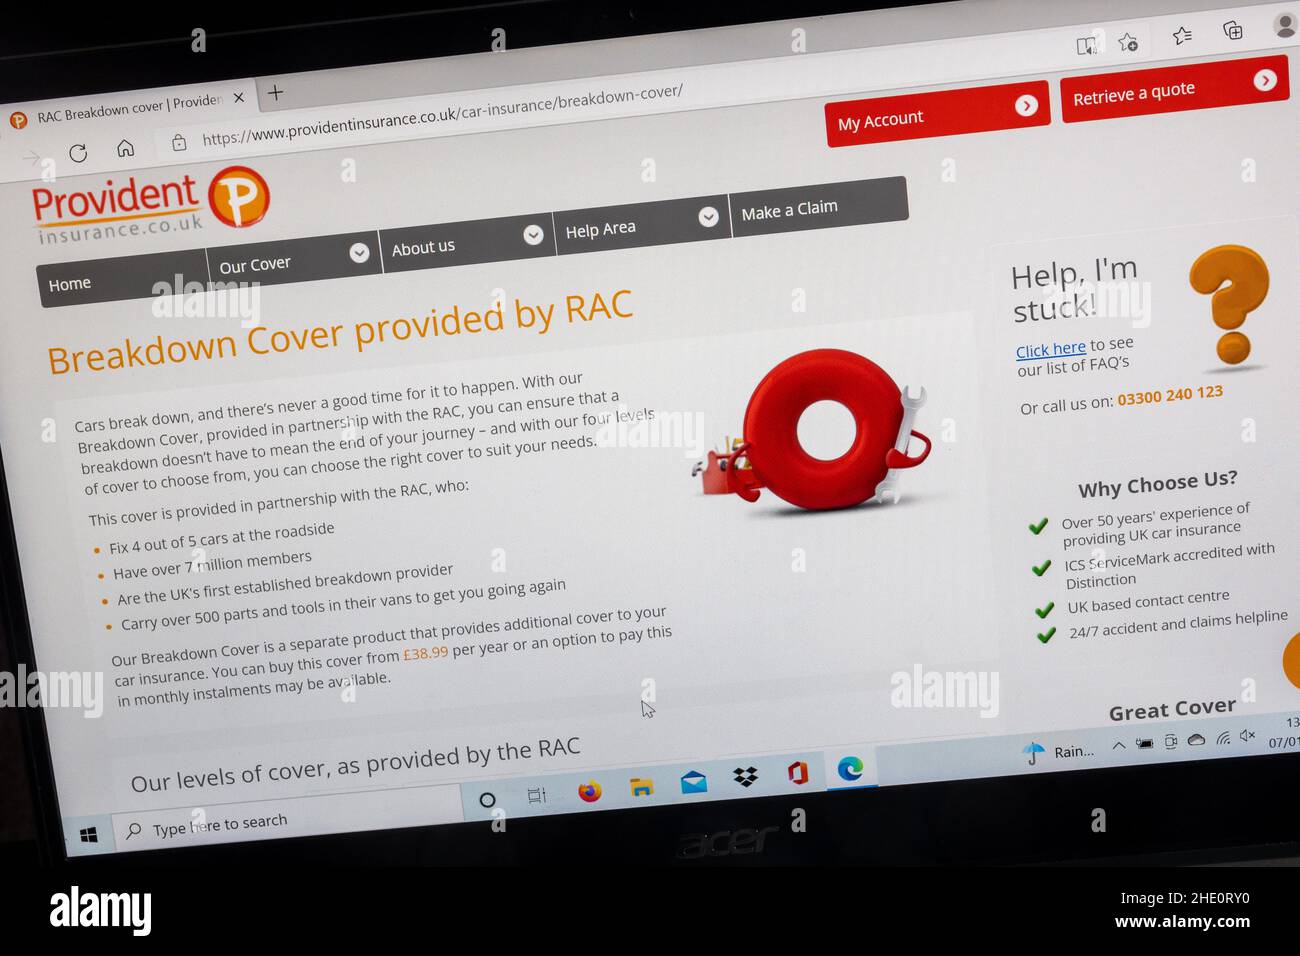 Provident Insurance Company sur un ordinateur portable, Royaume-Uni.Couverture de panne fournie par RAC. Banque D'Images